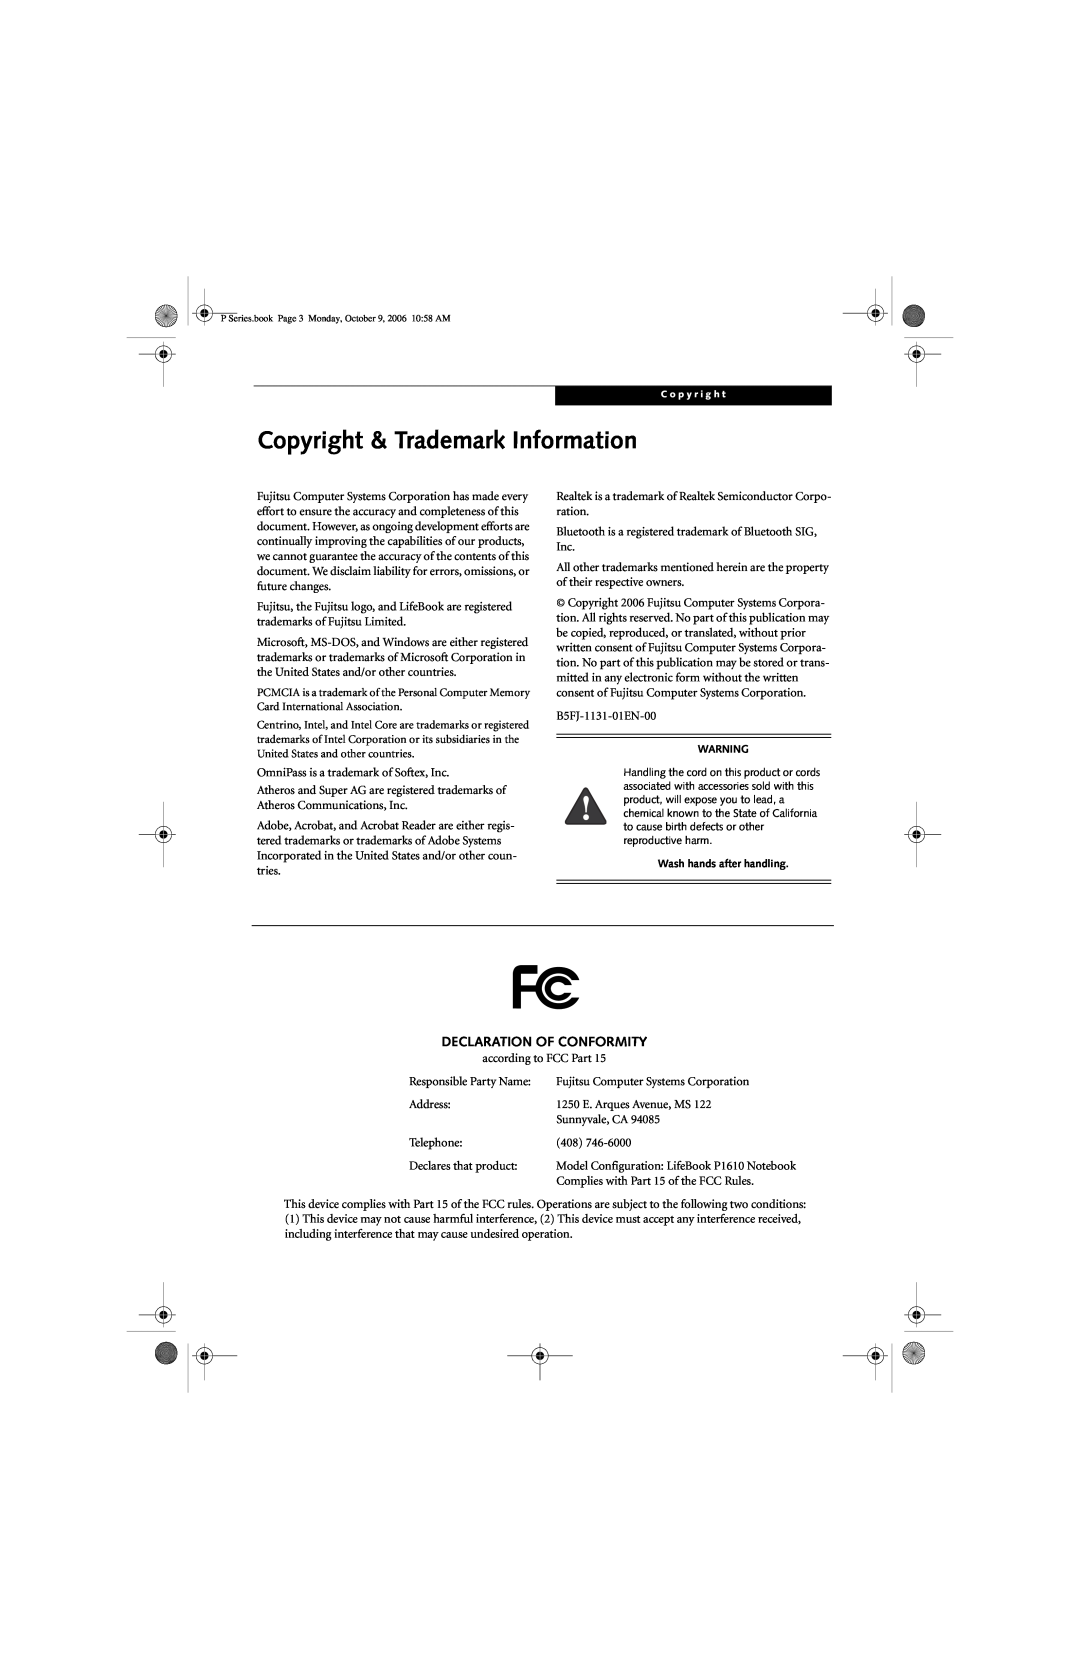 Fujitsu P1610 manual Copyright & Trademark Information, Declaration Of Conformity 